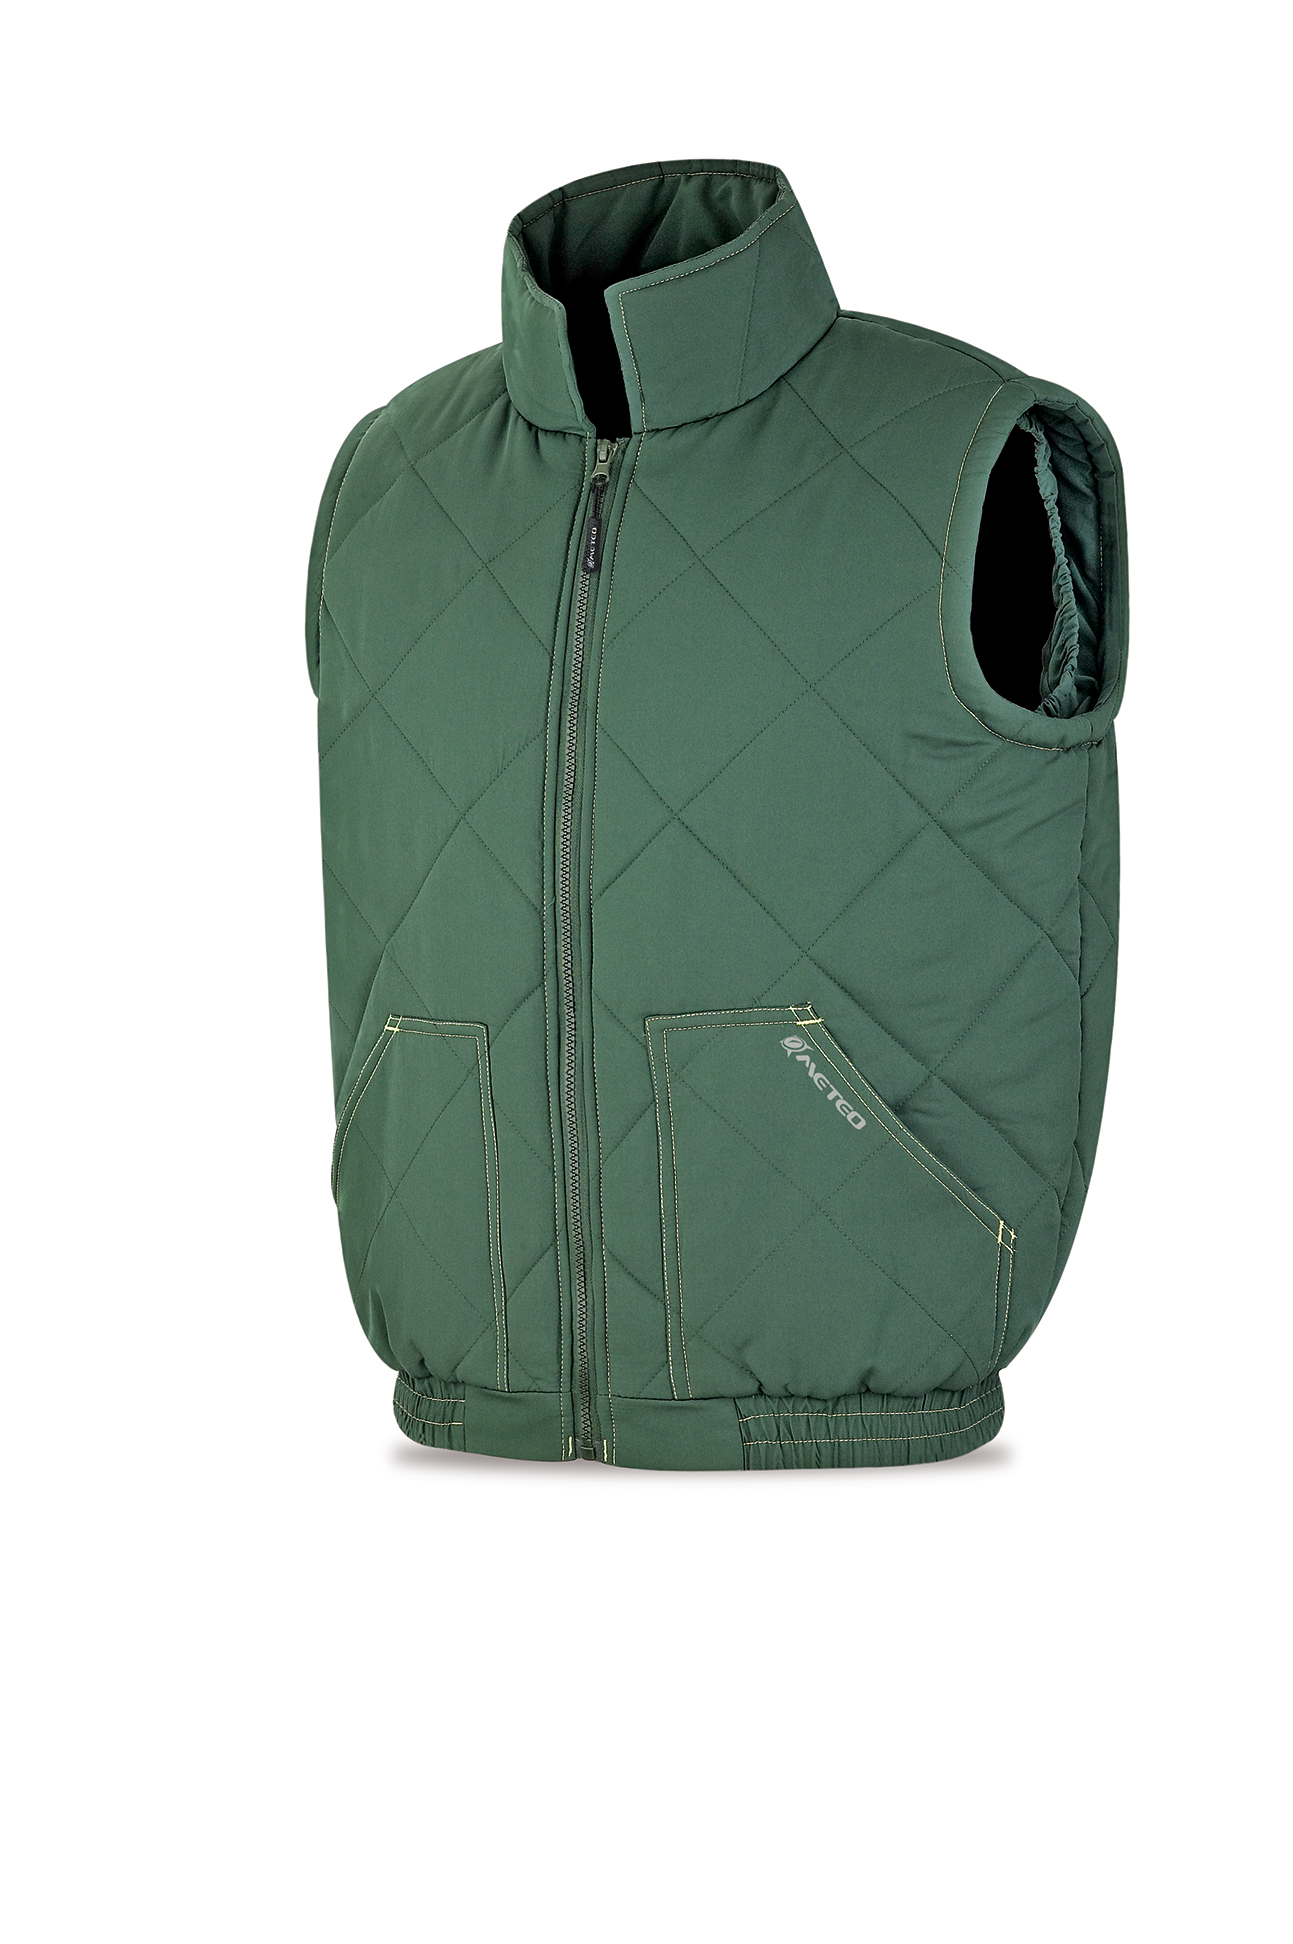 288-VERV Coats and Rain Gear  Jackets Classic Sleeveless jacket model BALDER.